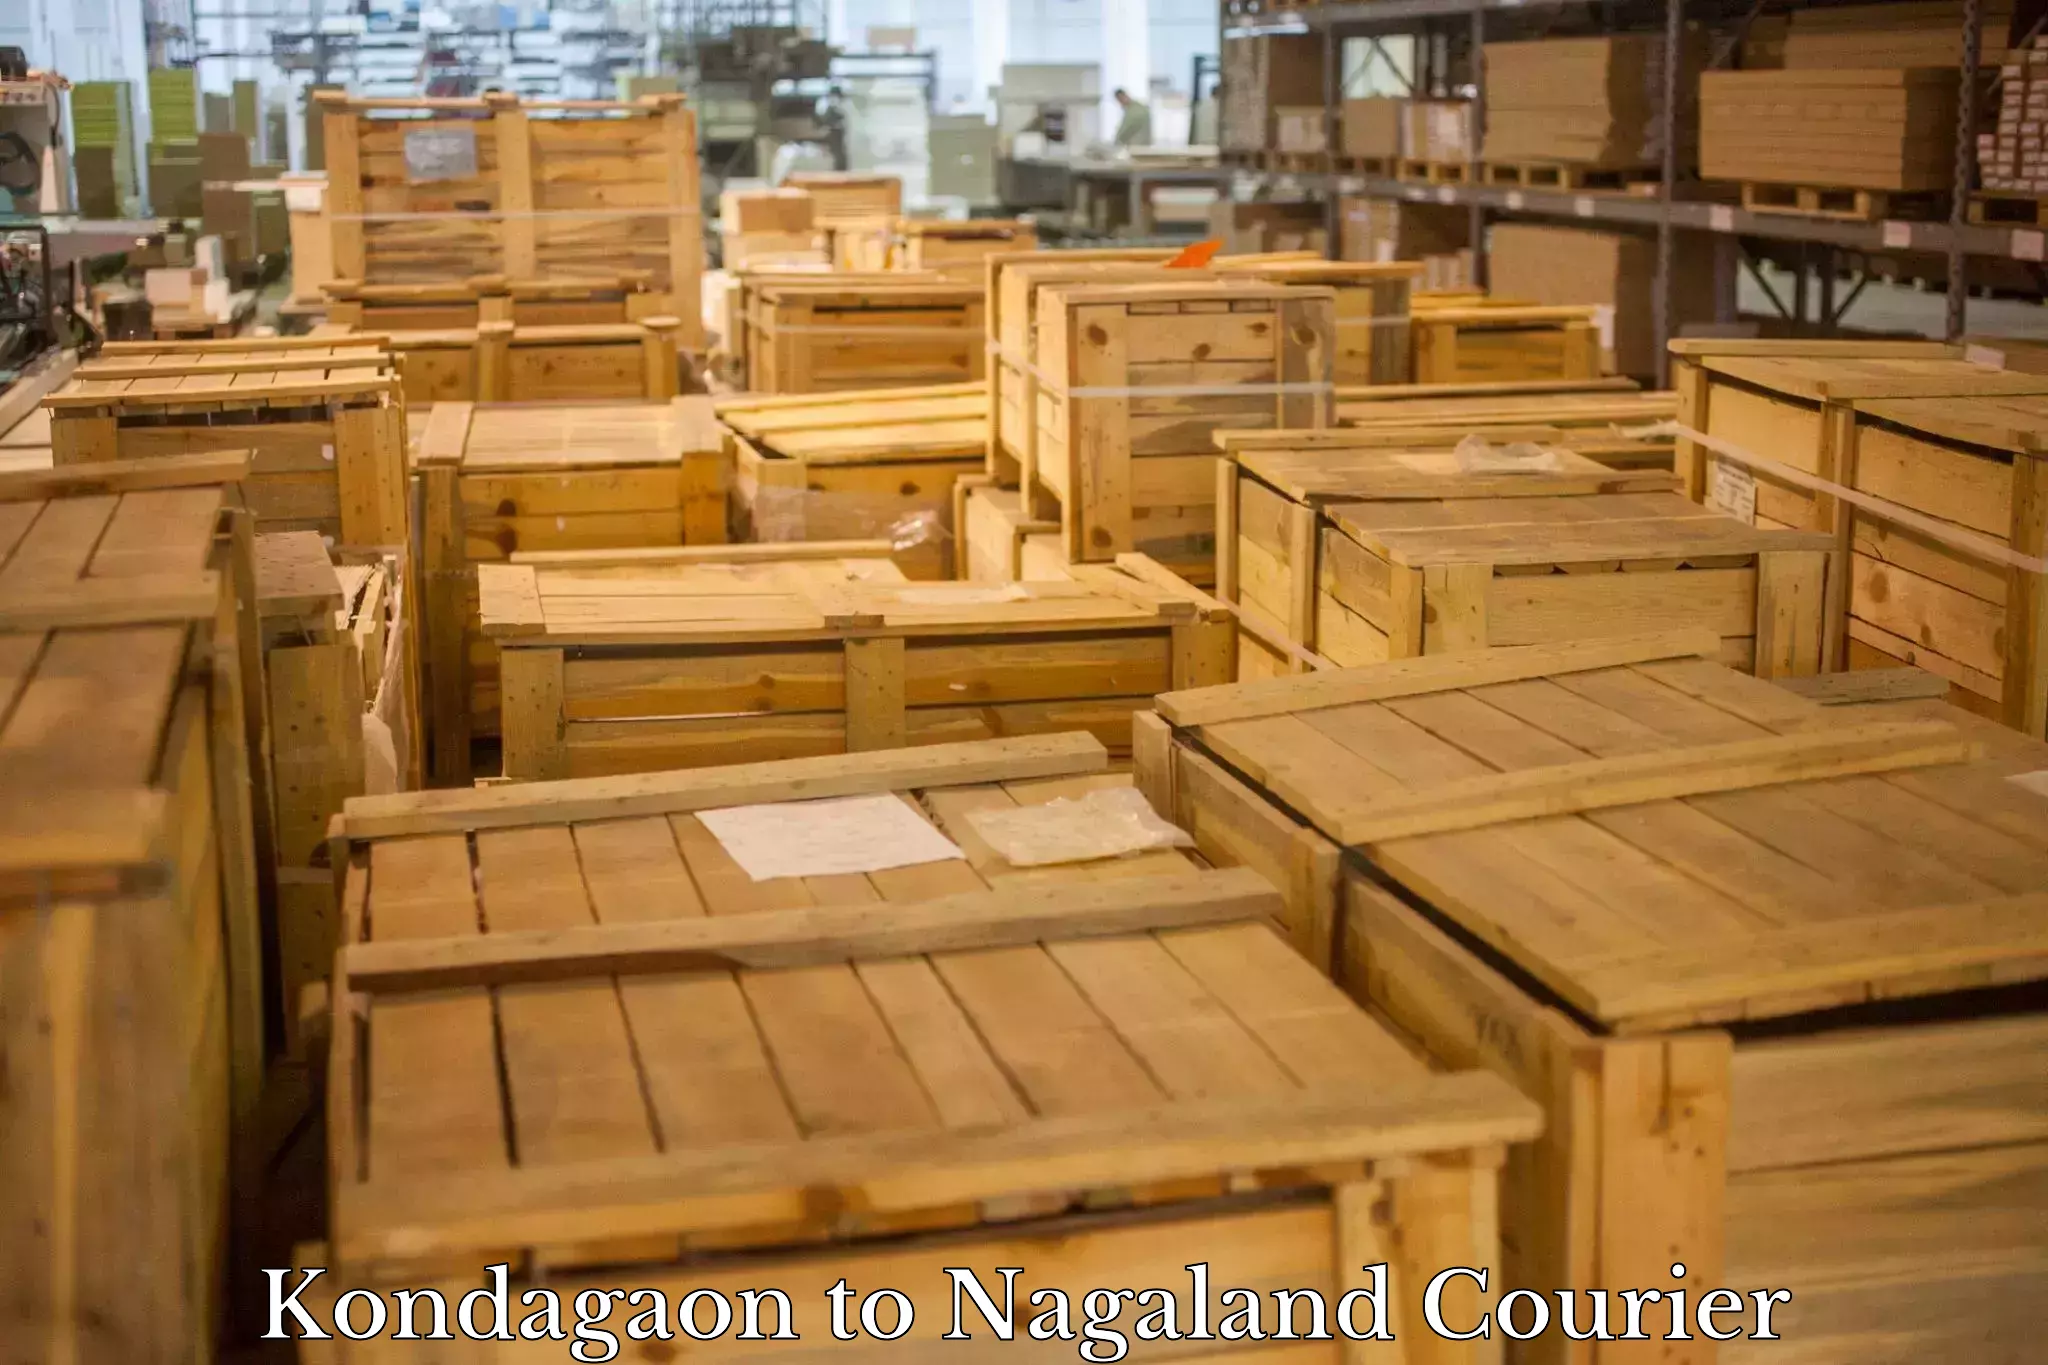 Comprehensive parcel tracking Kondagaon to Nagaland